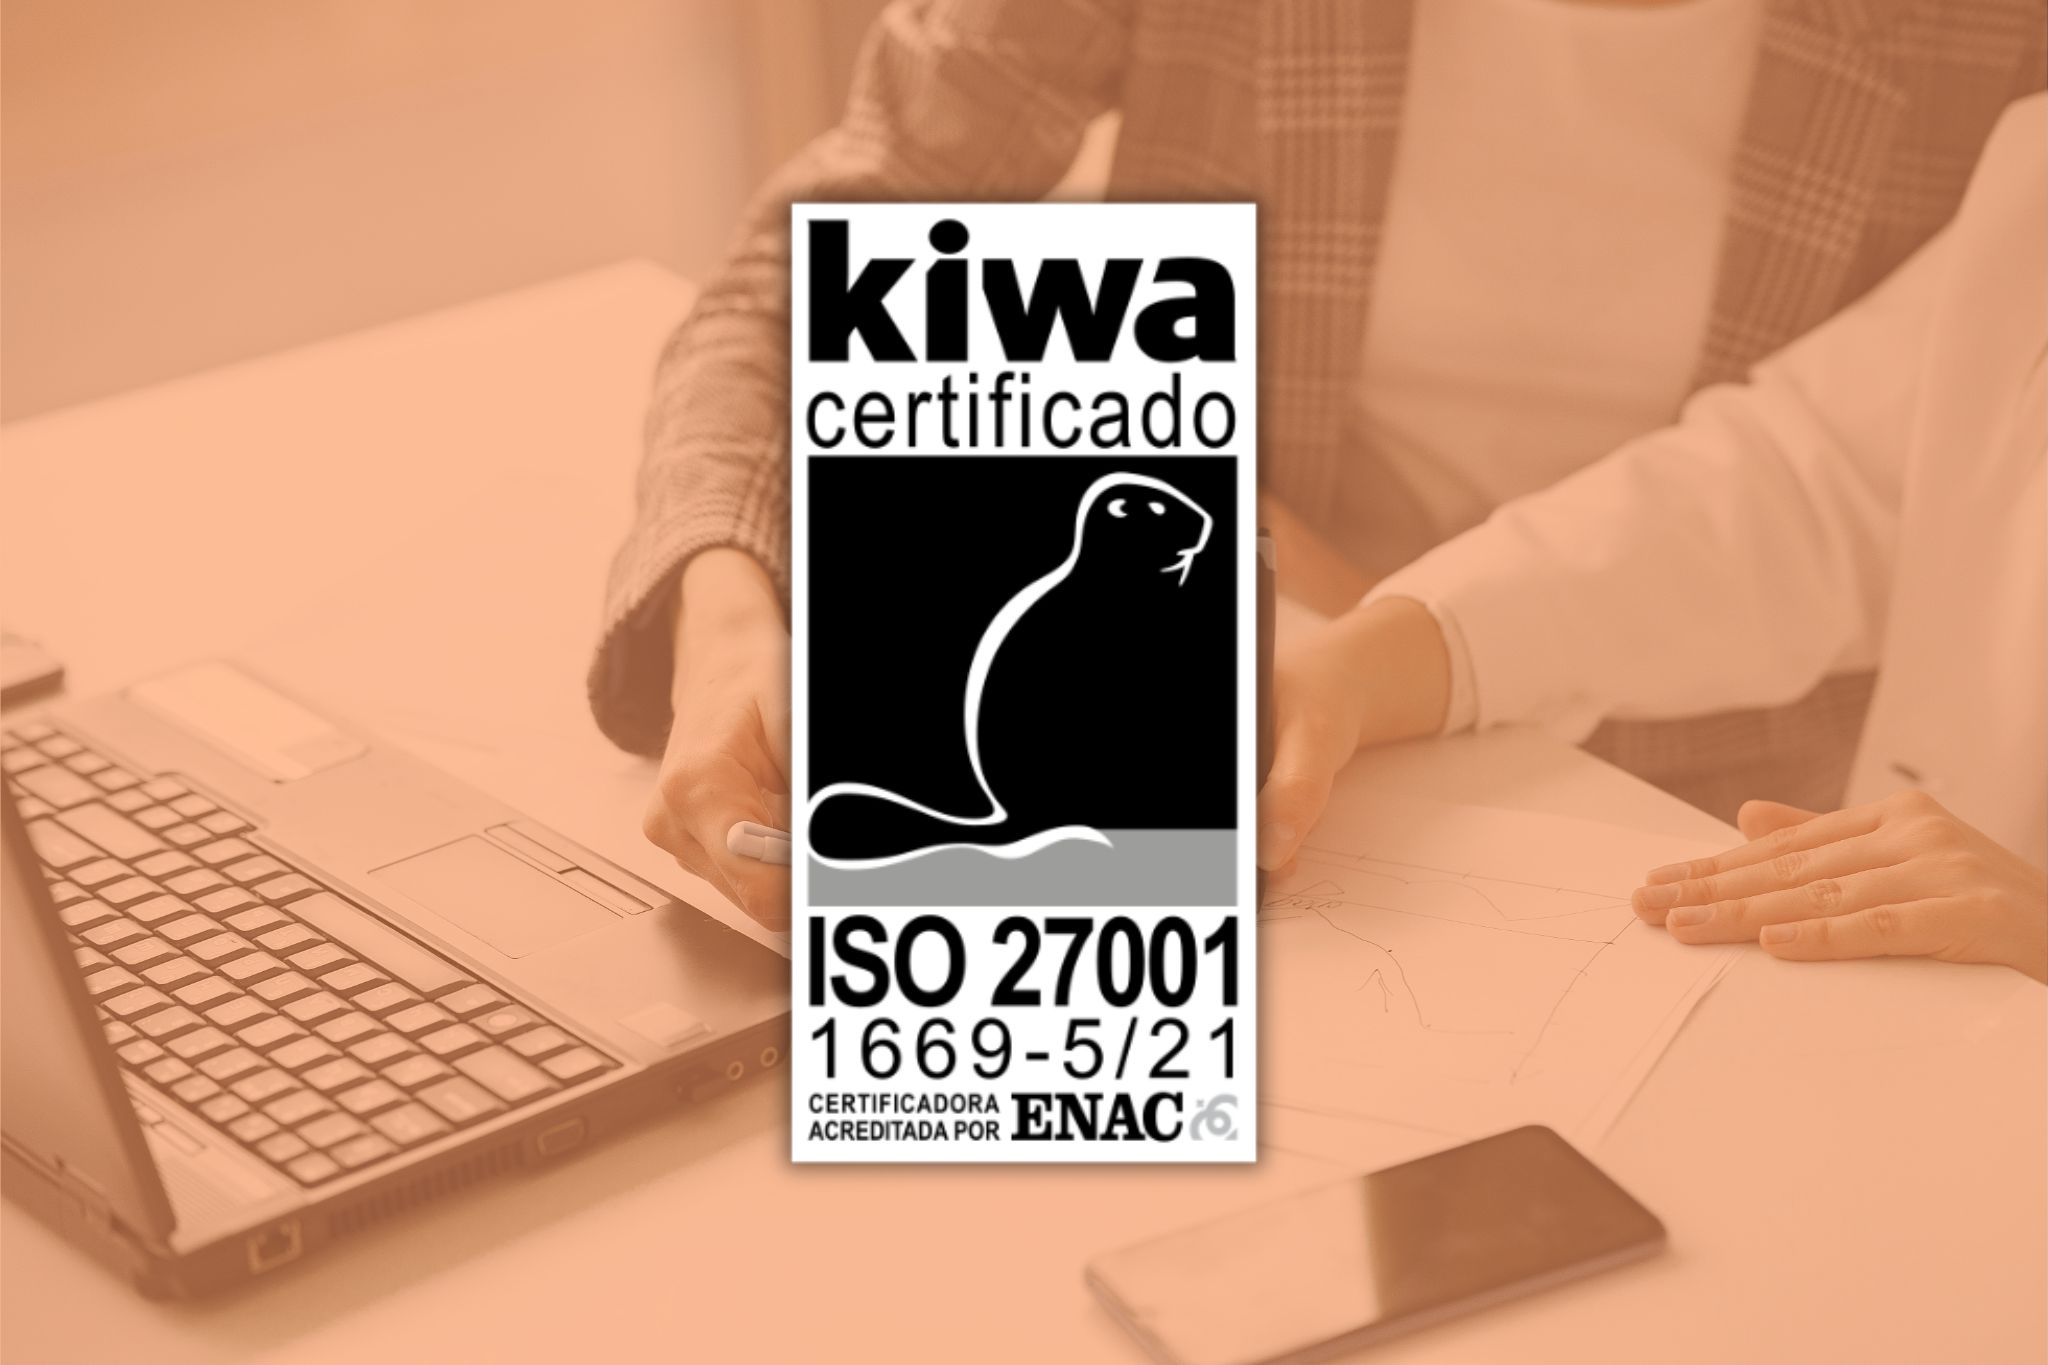 Logo de la certificación ISO 27001 superpuesto sobre una imagen que muestra a dos empleados trabajando en una mesa frente a un ordenador portátil